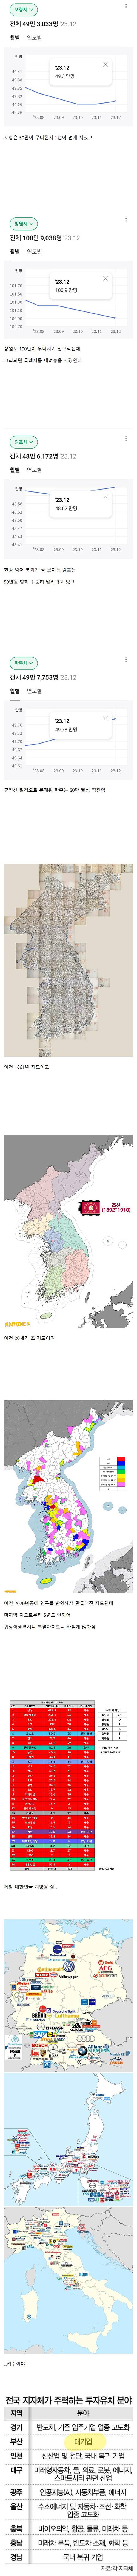 한국 도시 인구 현황